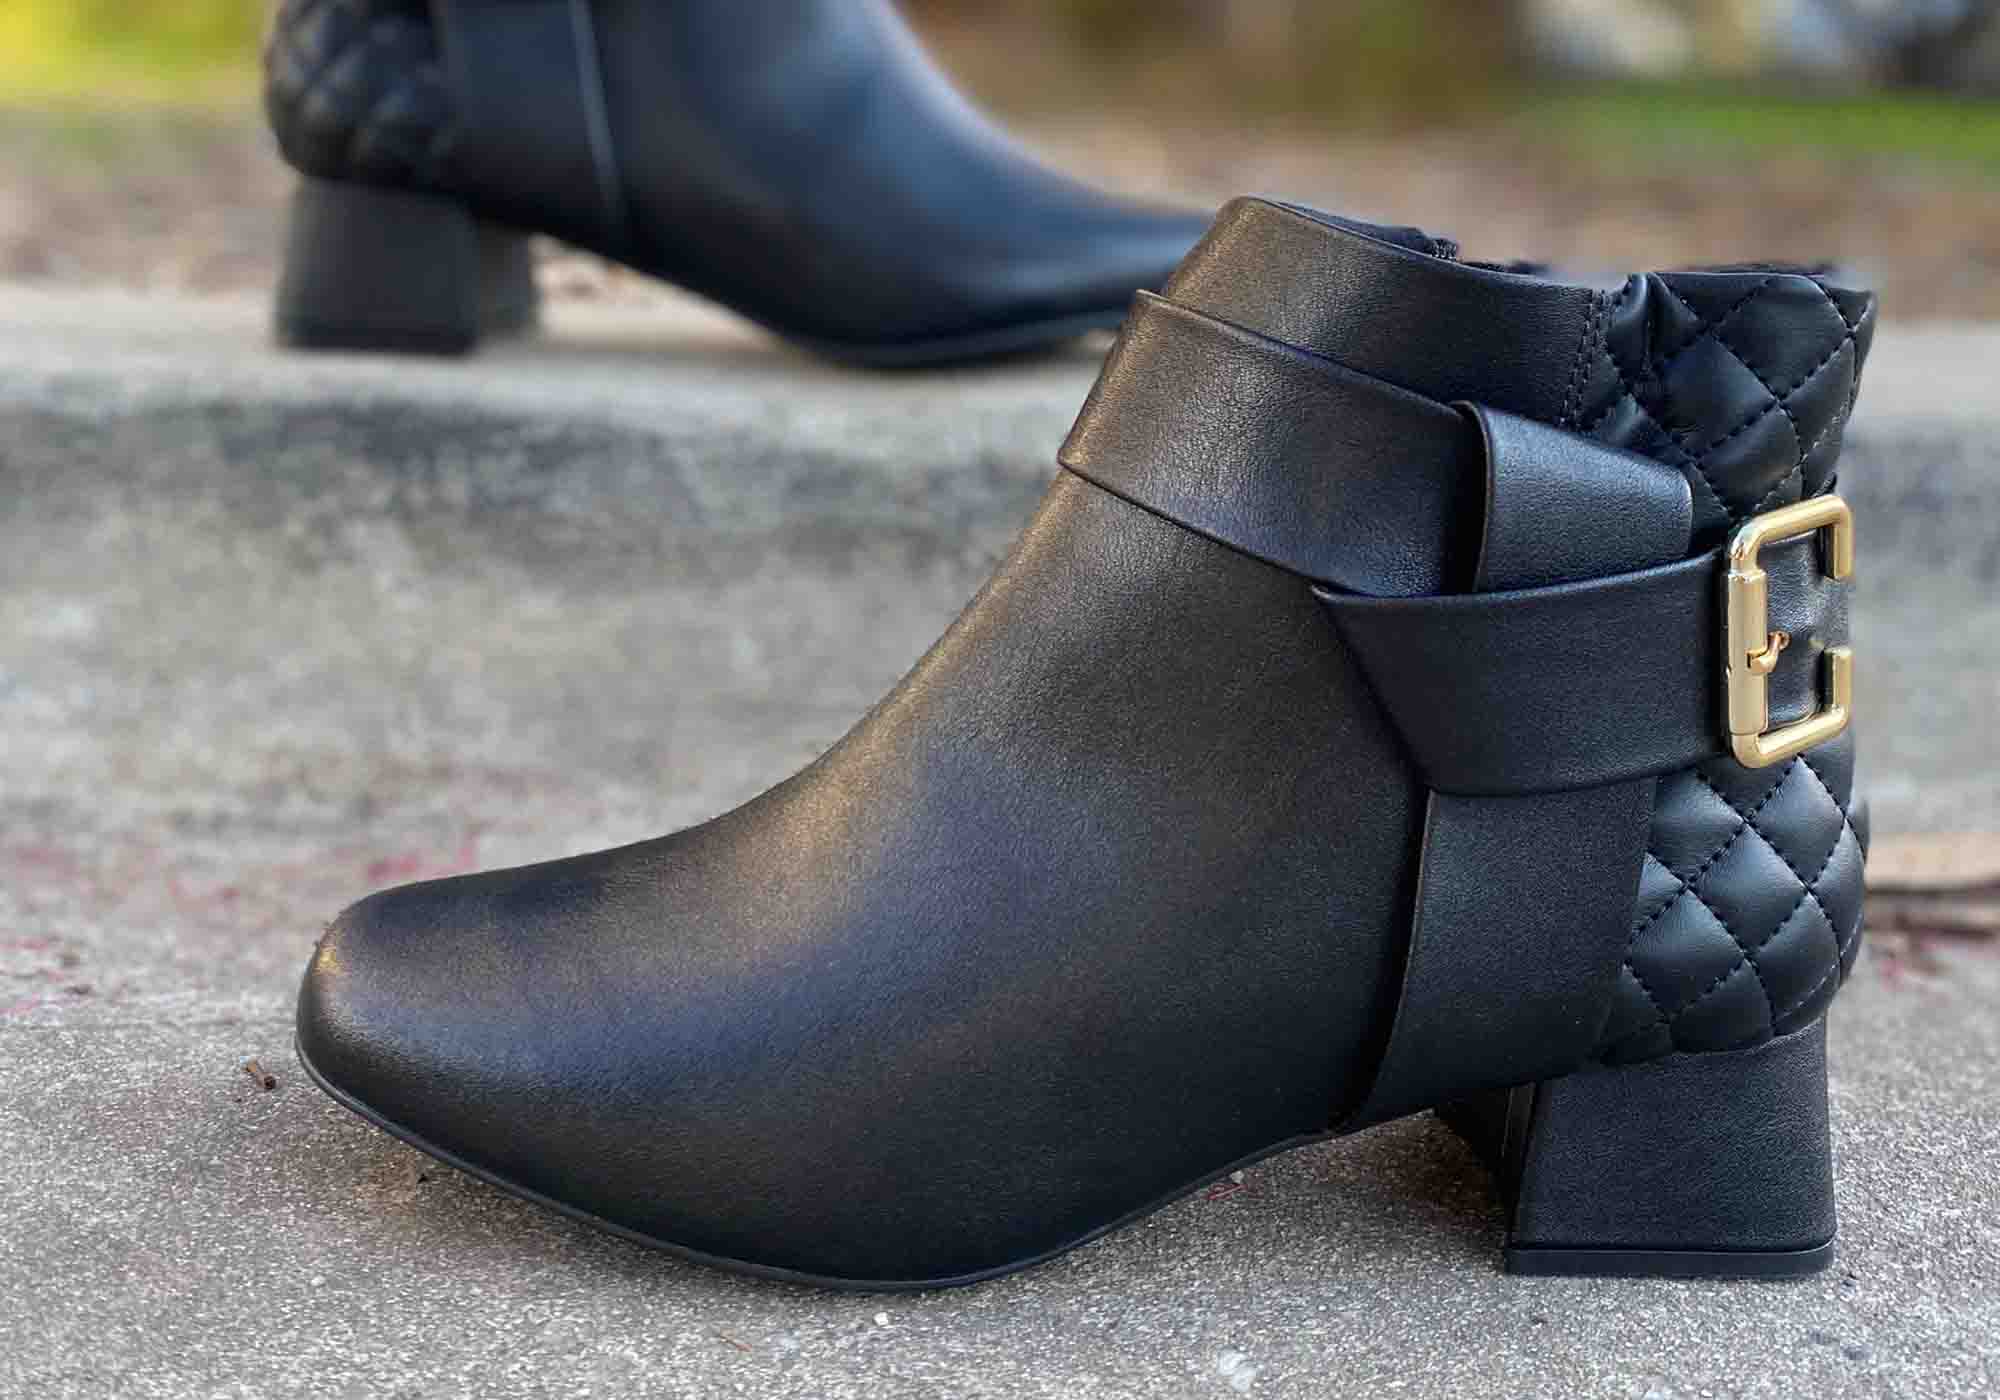 Modare Ultraconforto Aleanor Womens Comfortable Ankle Boots